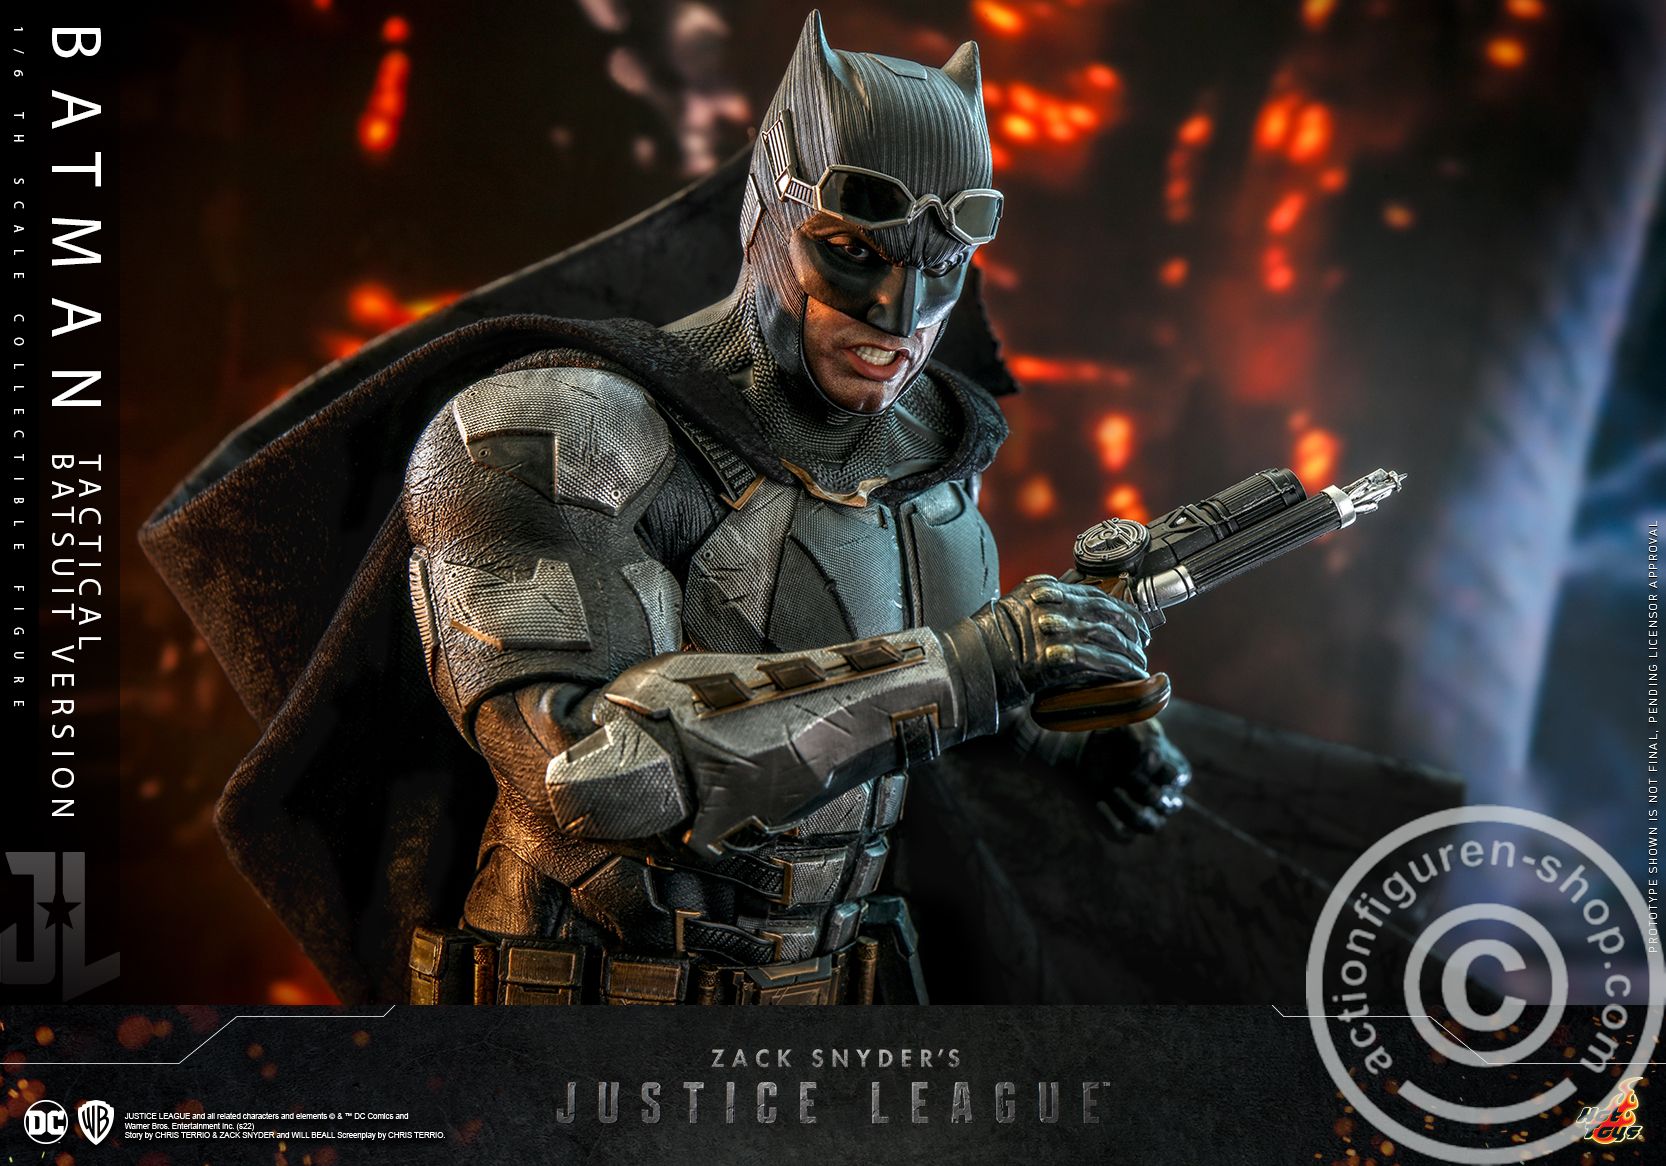 Zack Snyder's Justice League - Batman (Tactical Batsuit Version)